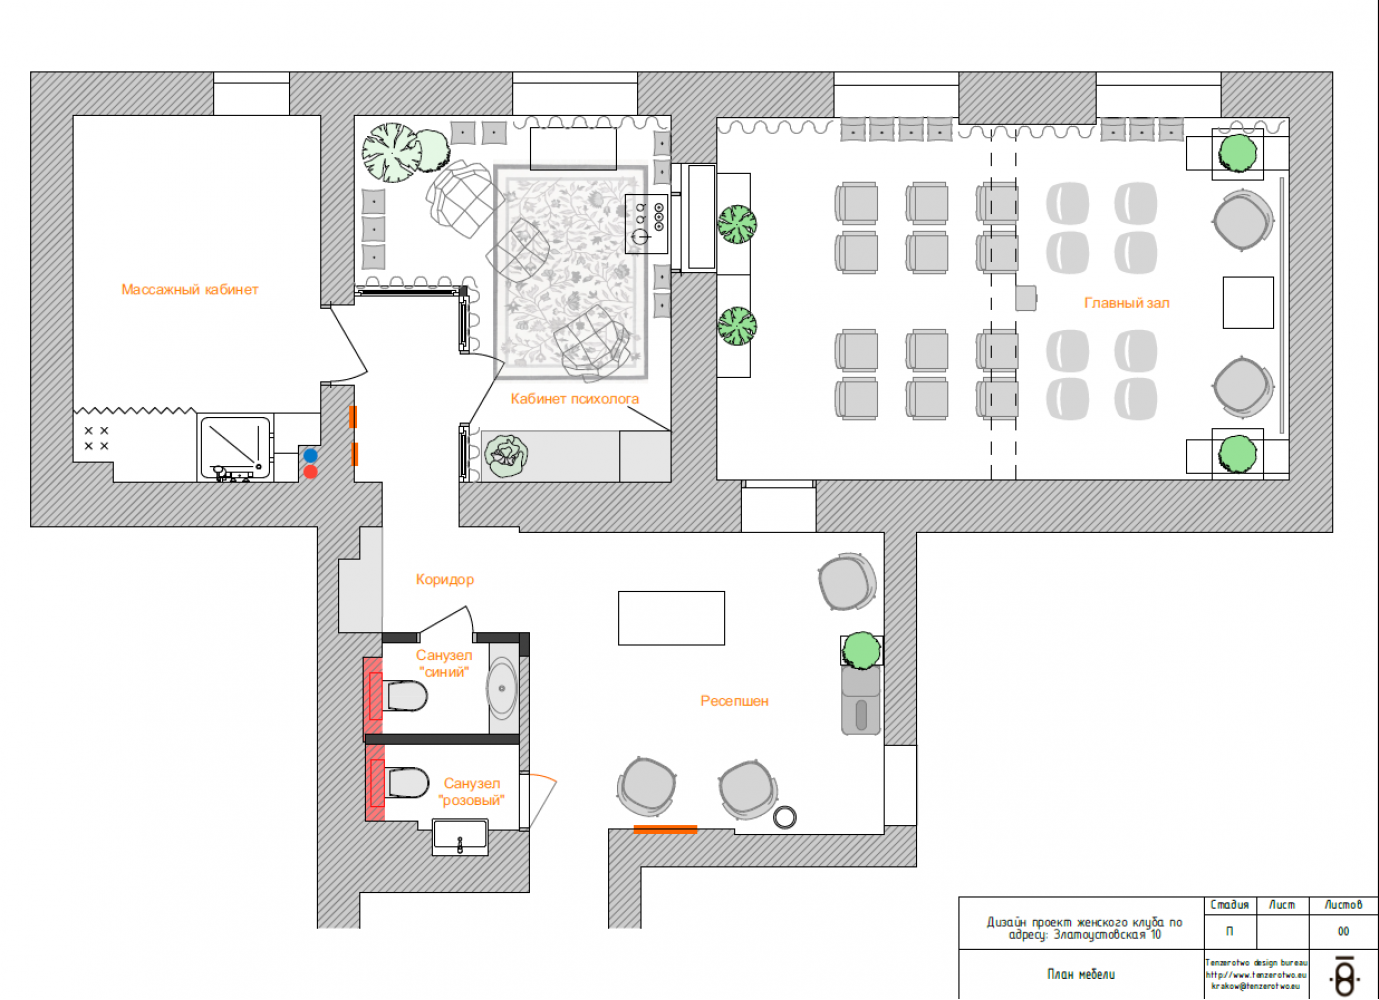 Планировка в дизайн-проекте салона красоты Women's Club, 120 м. кв. — студия дизайна 10:02 Design Burean